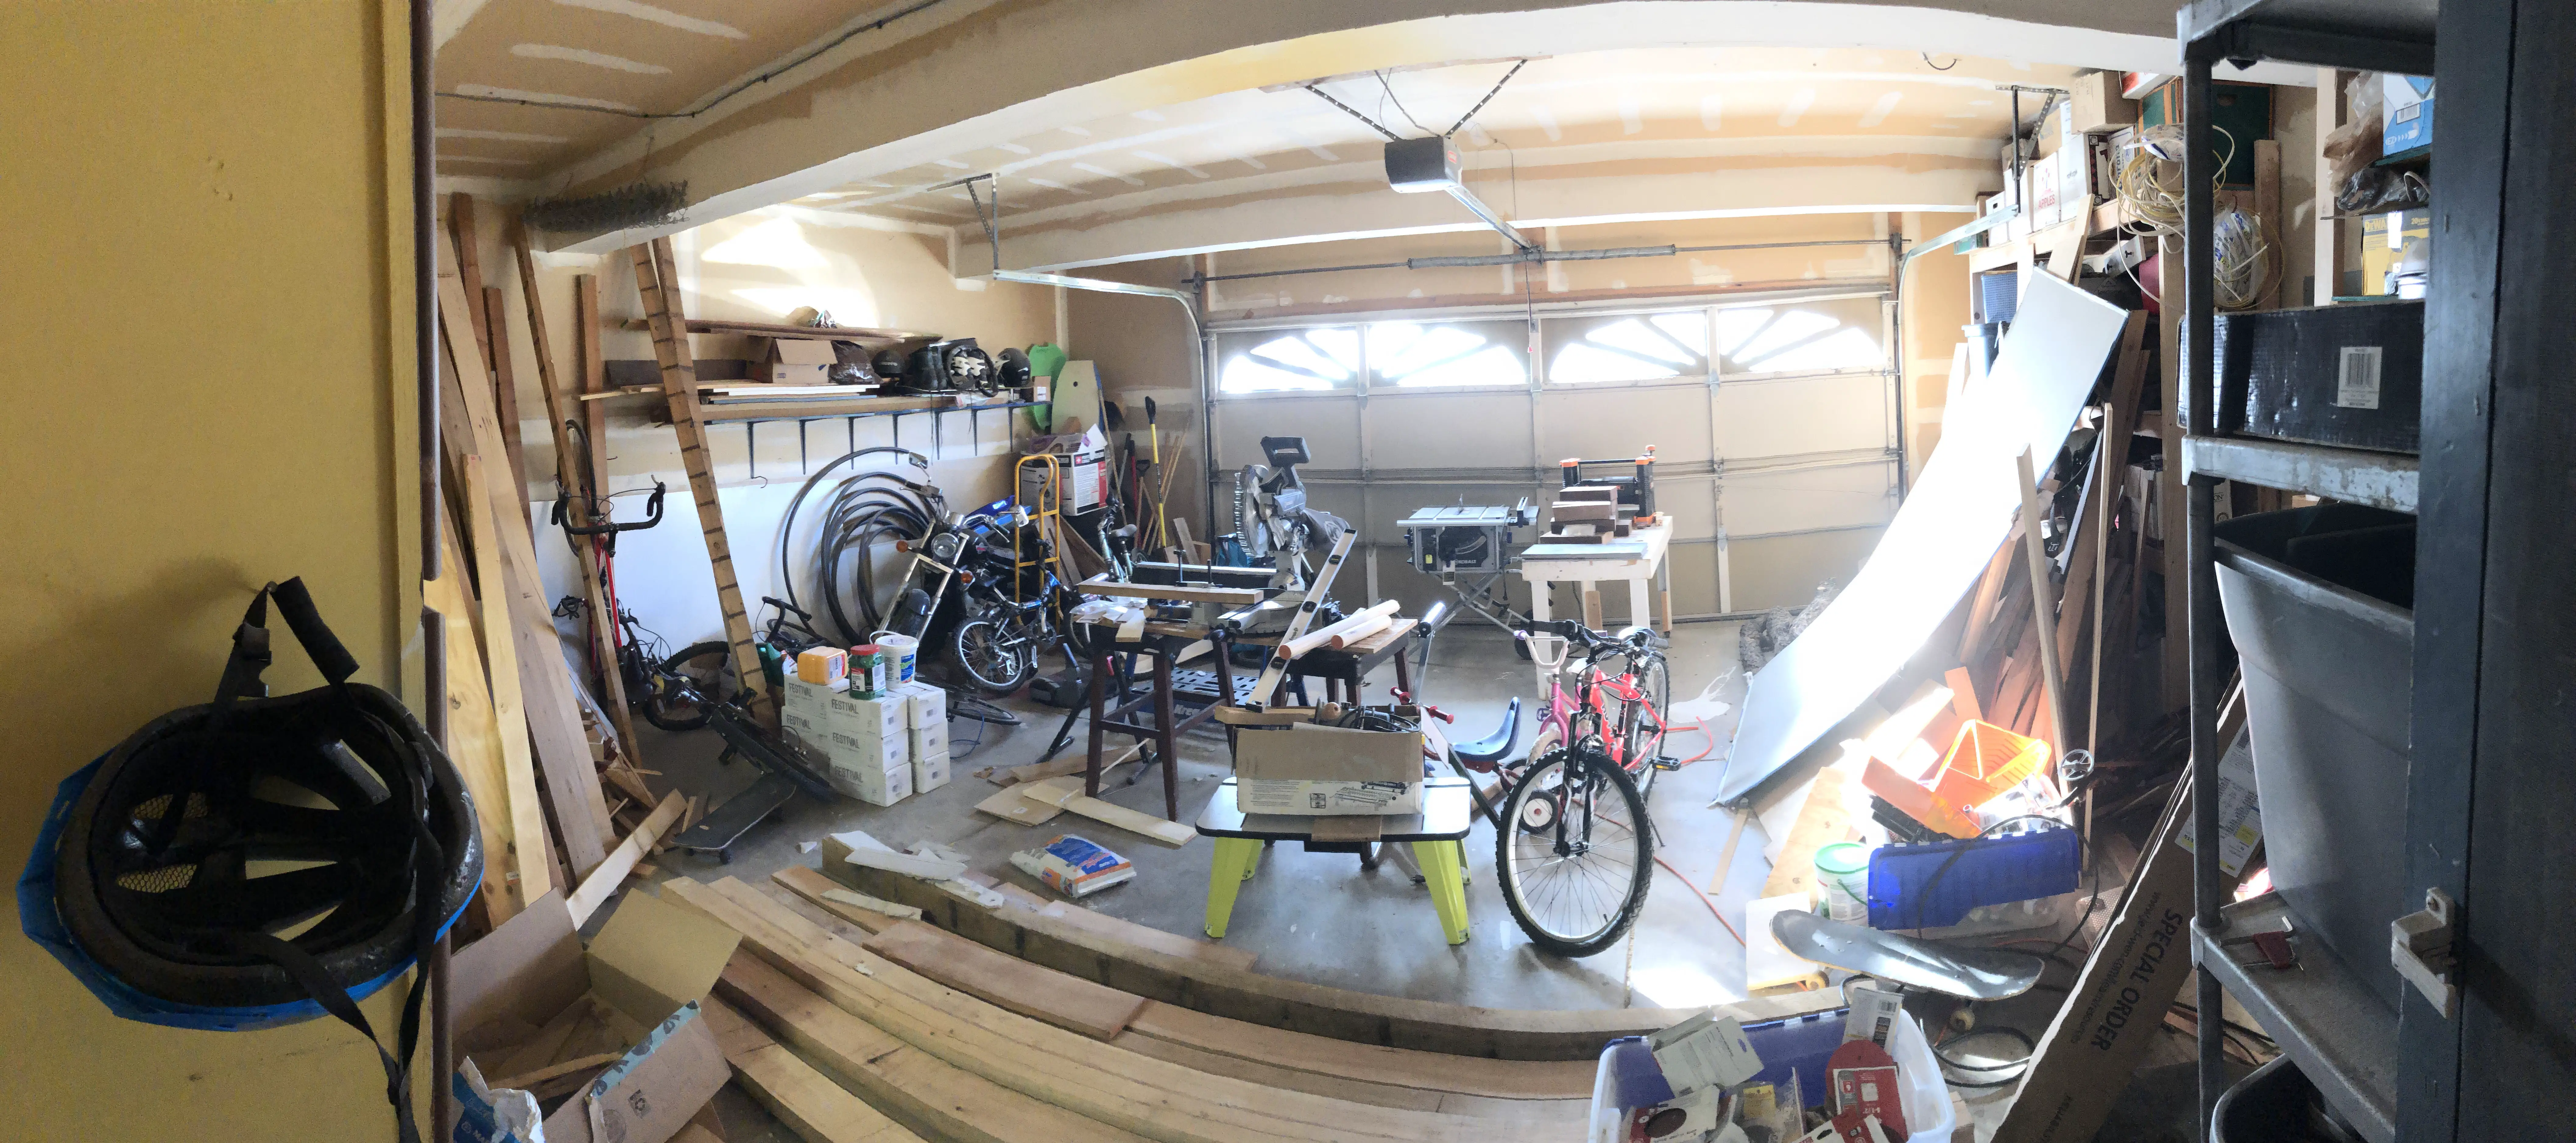 Garage Before Organization